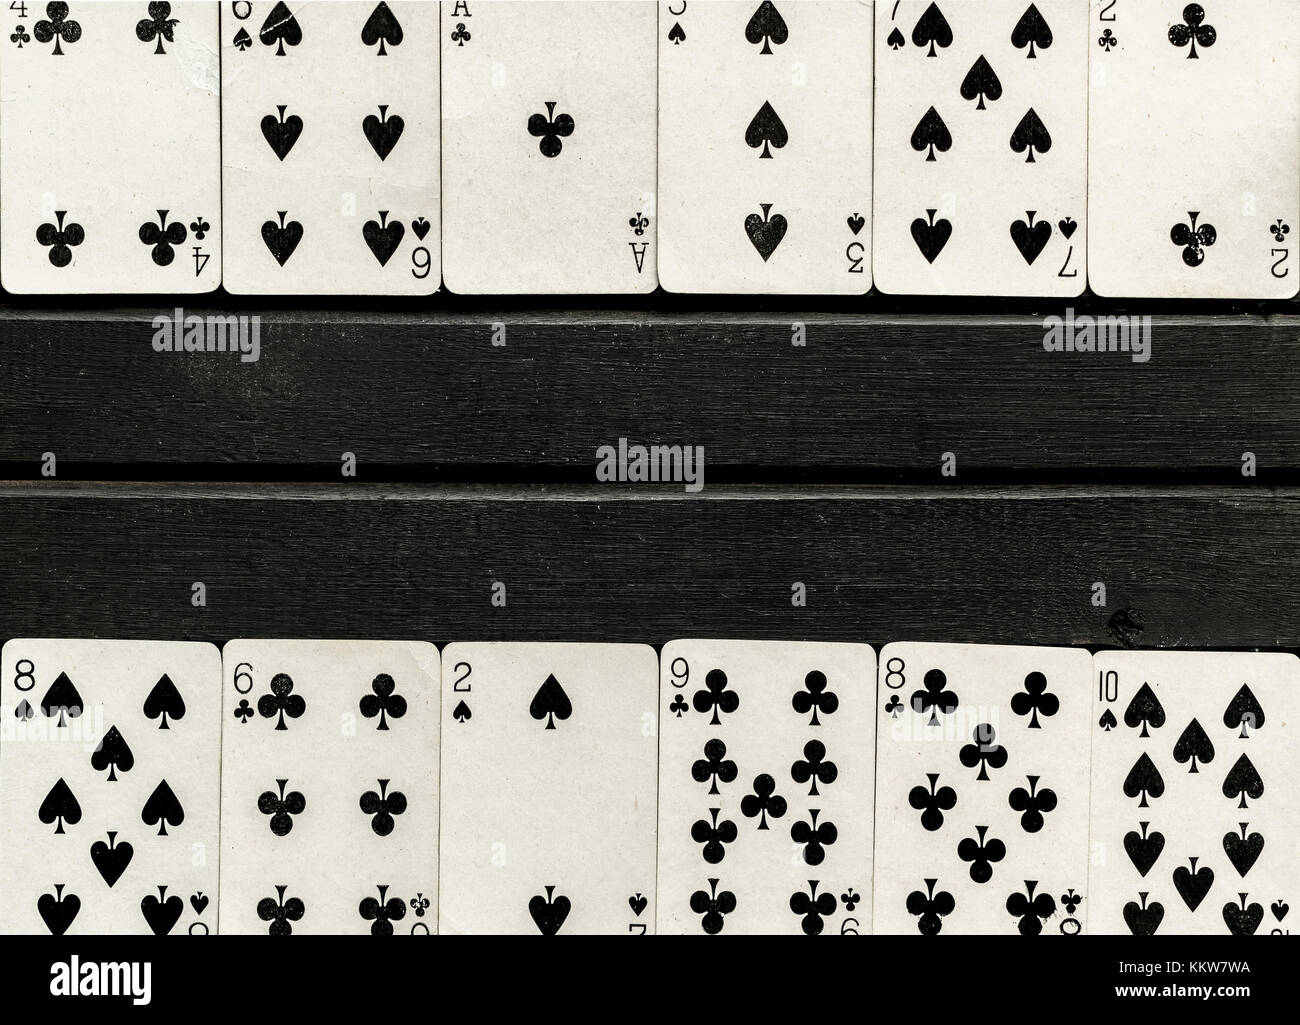 Mazzo di bianco e nero giocando a carte a faccia scoperta, nero su sfondo di legno, carte allineate sul bordo della cornice Foto Stock